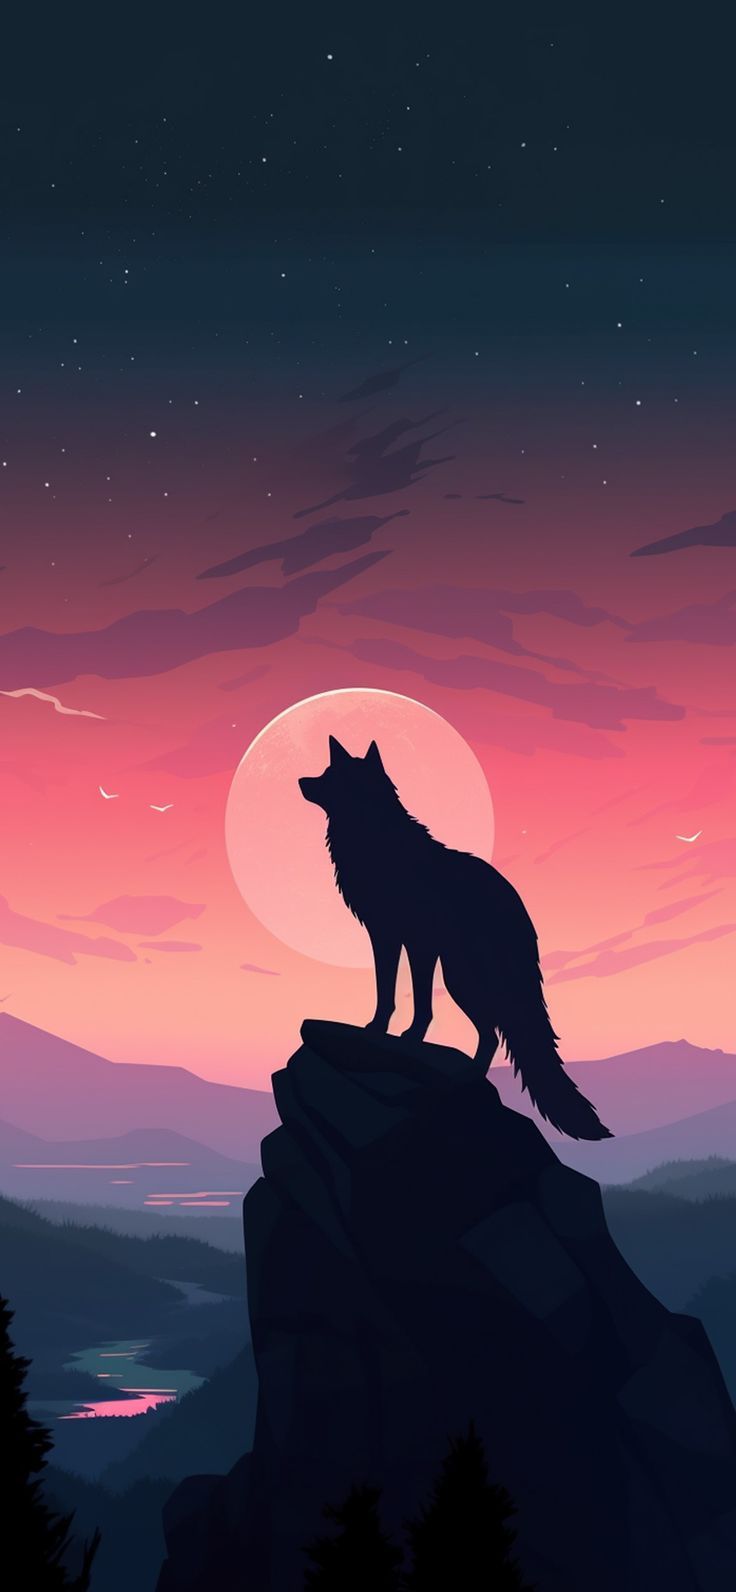  Wölfe Hintergrundbild 736x1592. Wolf & Sunset Aesthetic Wallpaper Wallpaper for iPhone in 2023. Wolf wallpaper, Big cats art, Japanese pop art